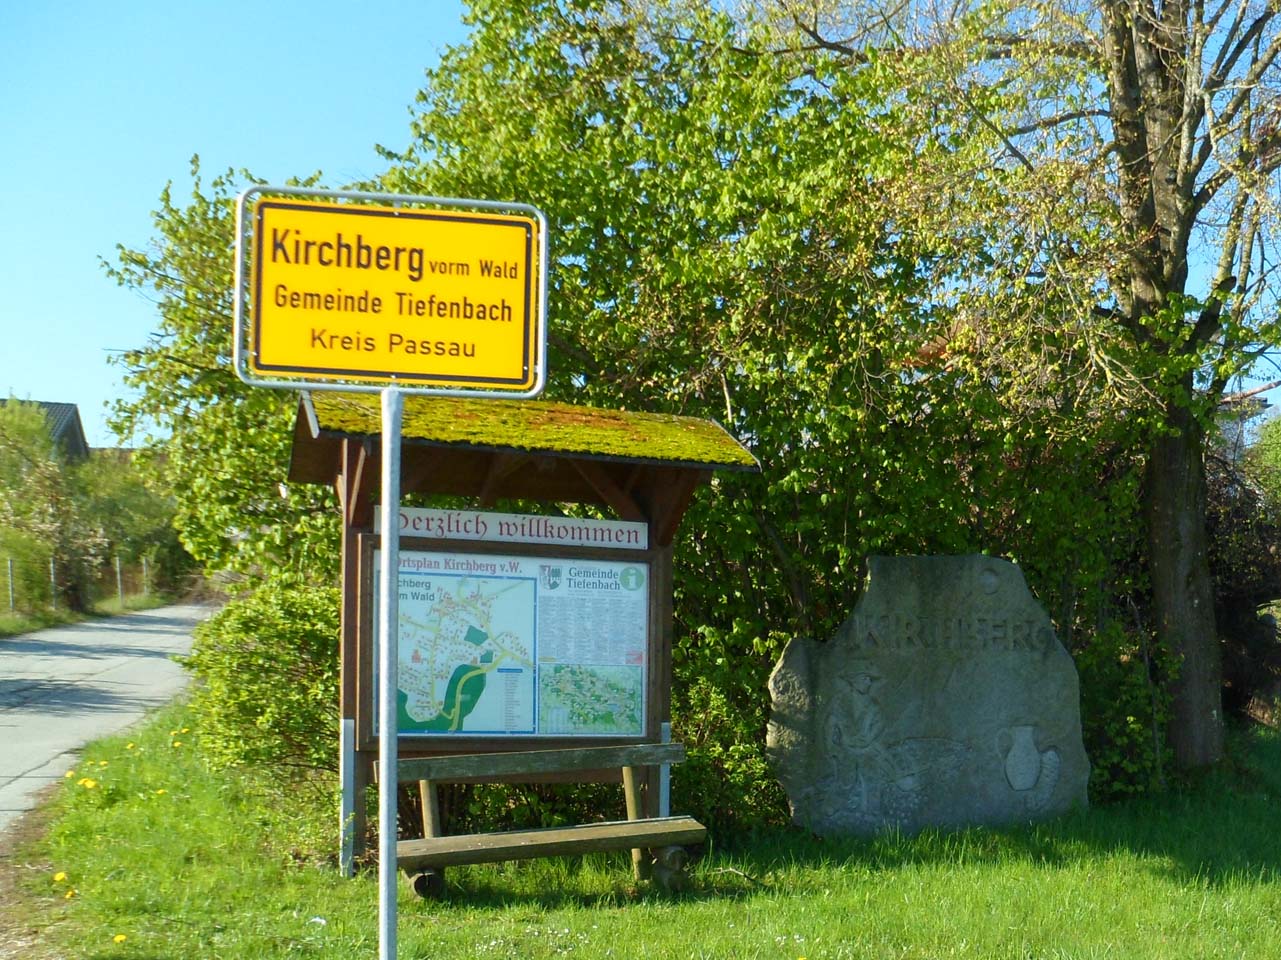 Kirchberg vorm Wald in Tiefenbach bei Passau